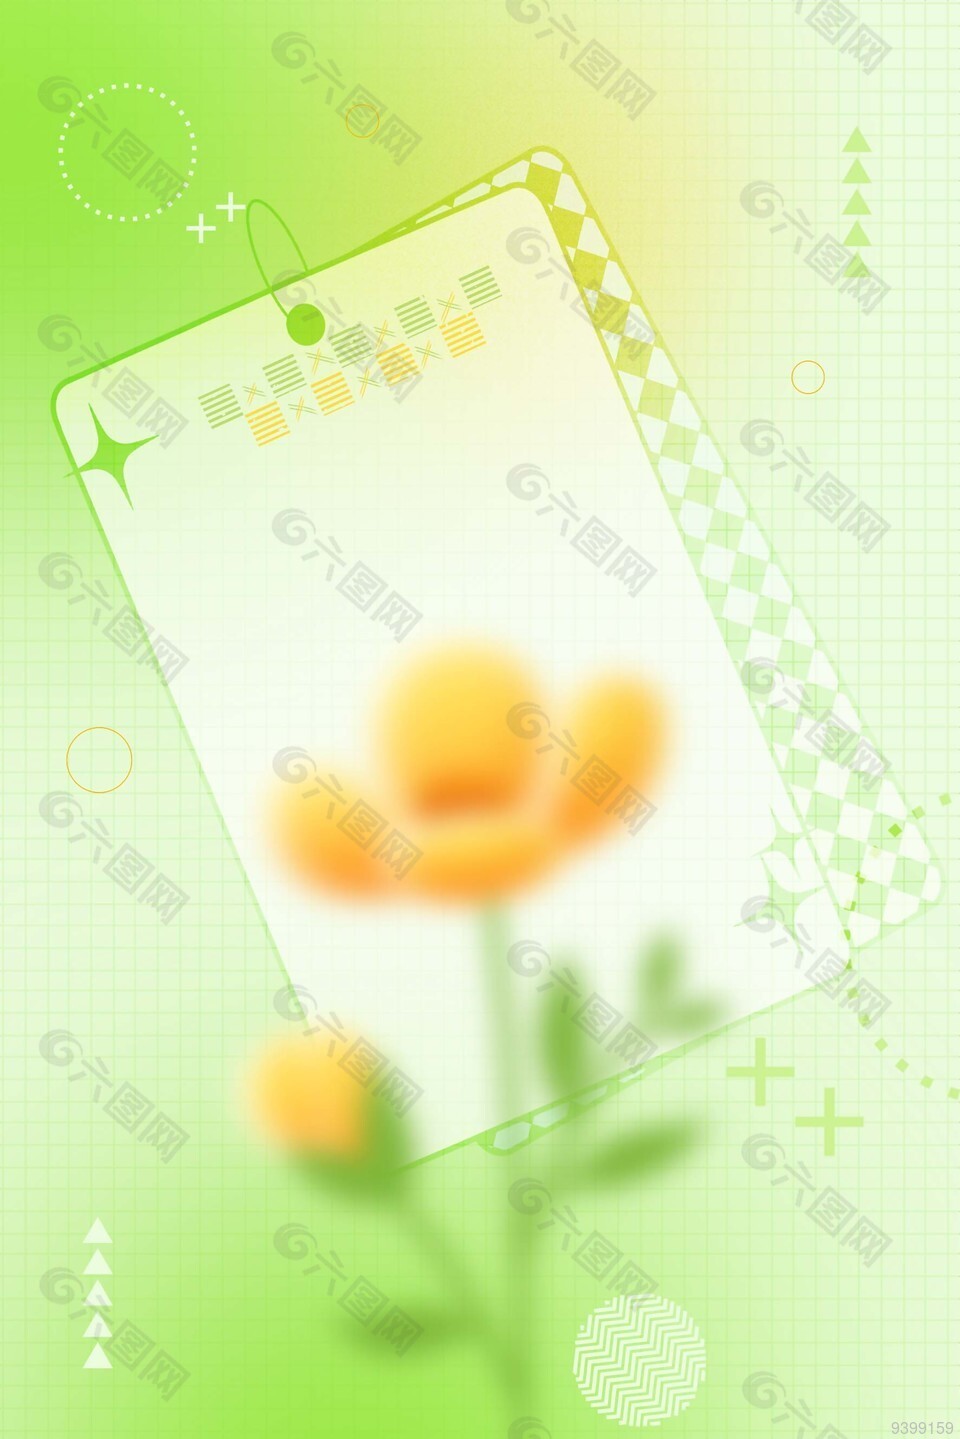 花朵植物海报设计素材